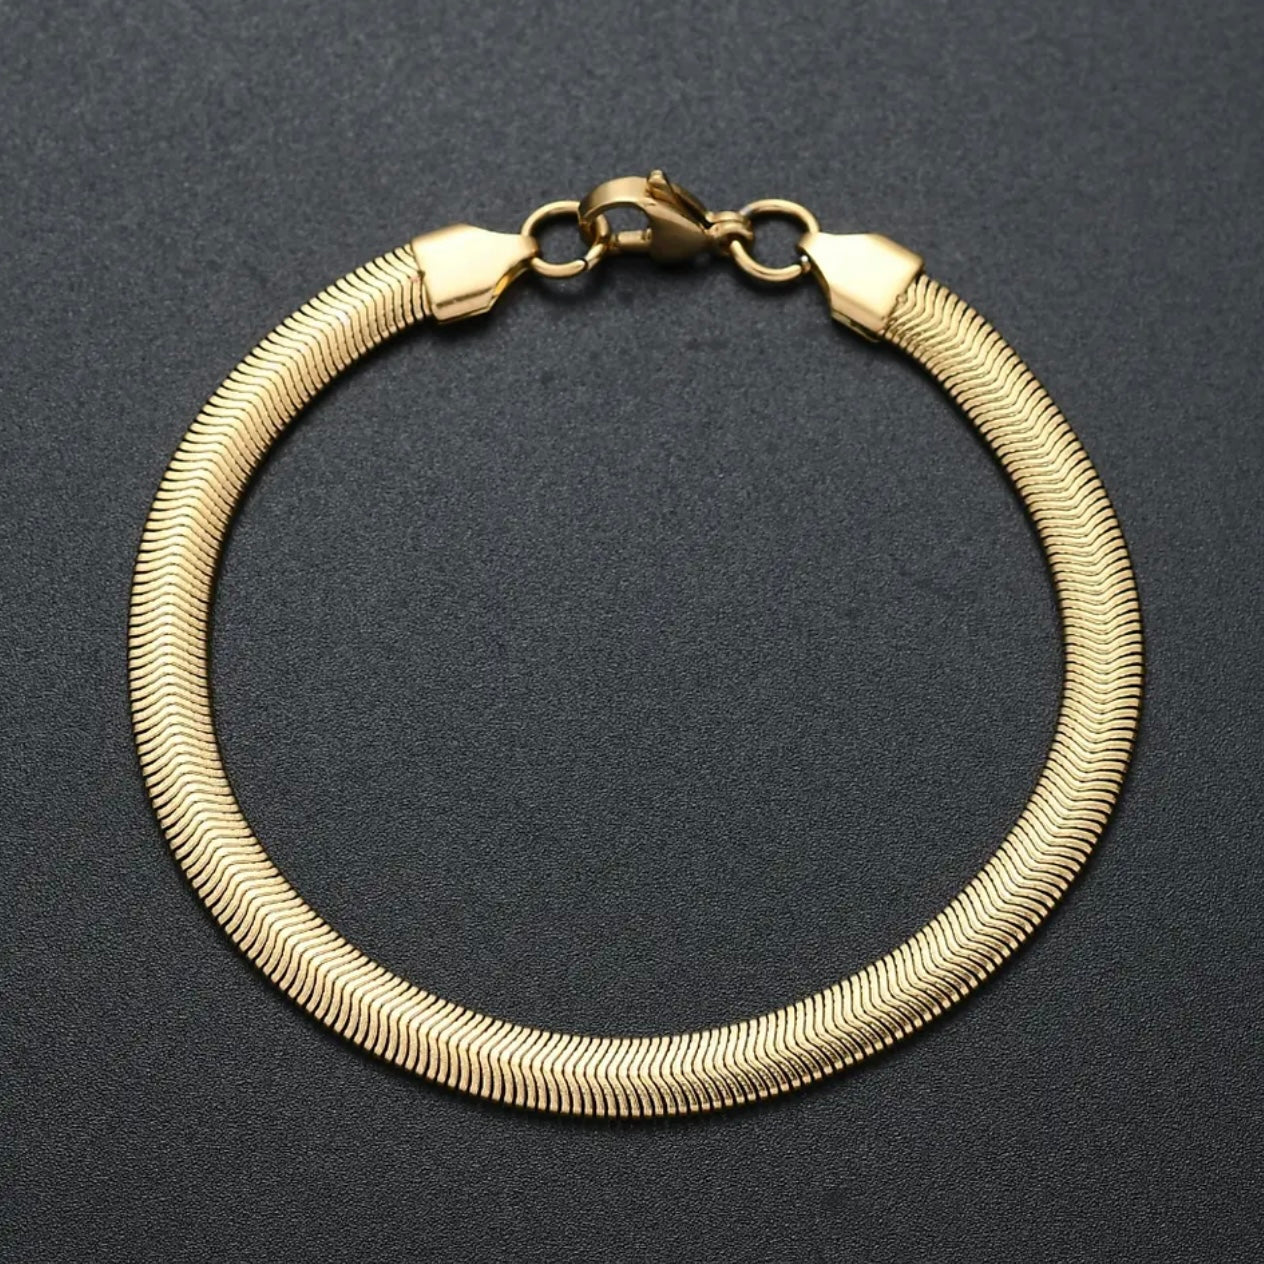 Golden Snake Chain Bracelet For Men Online In Pakistan